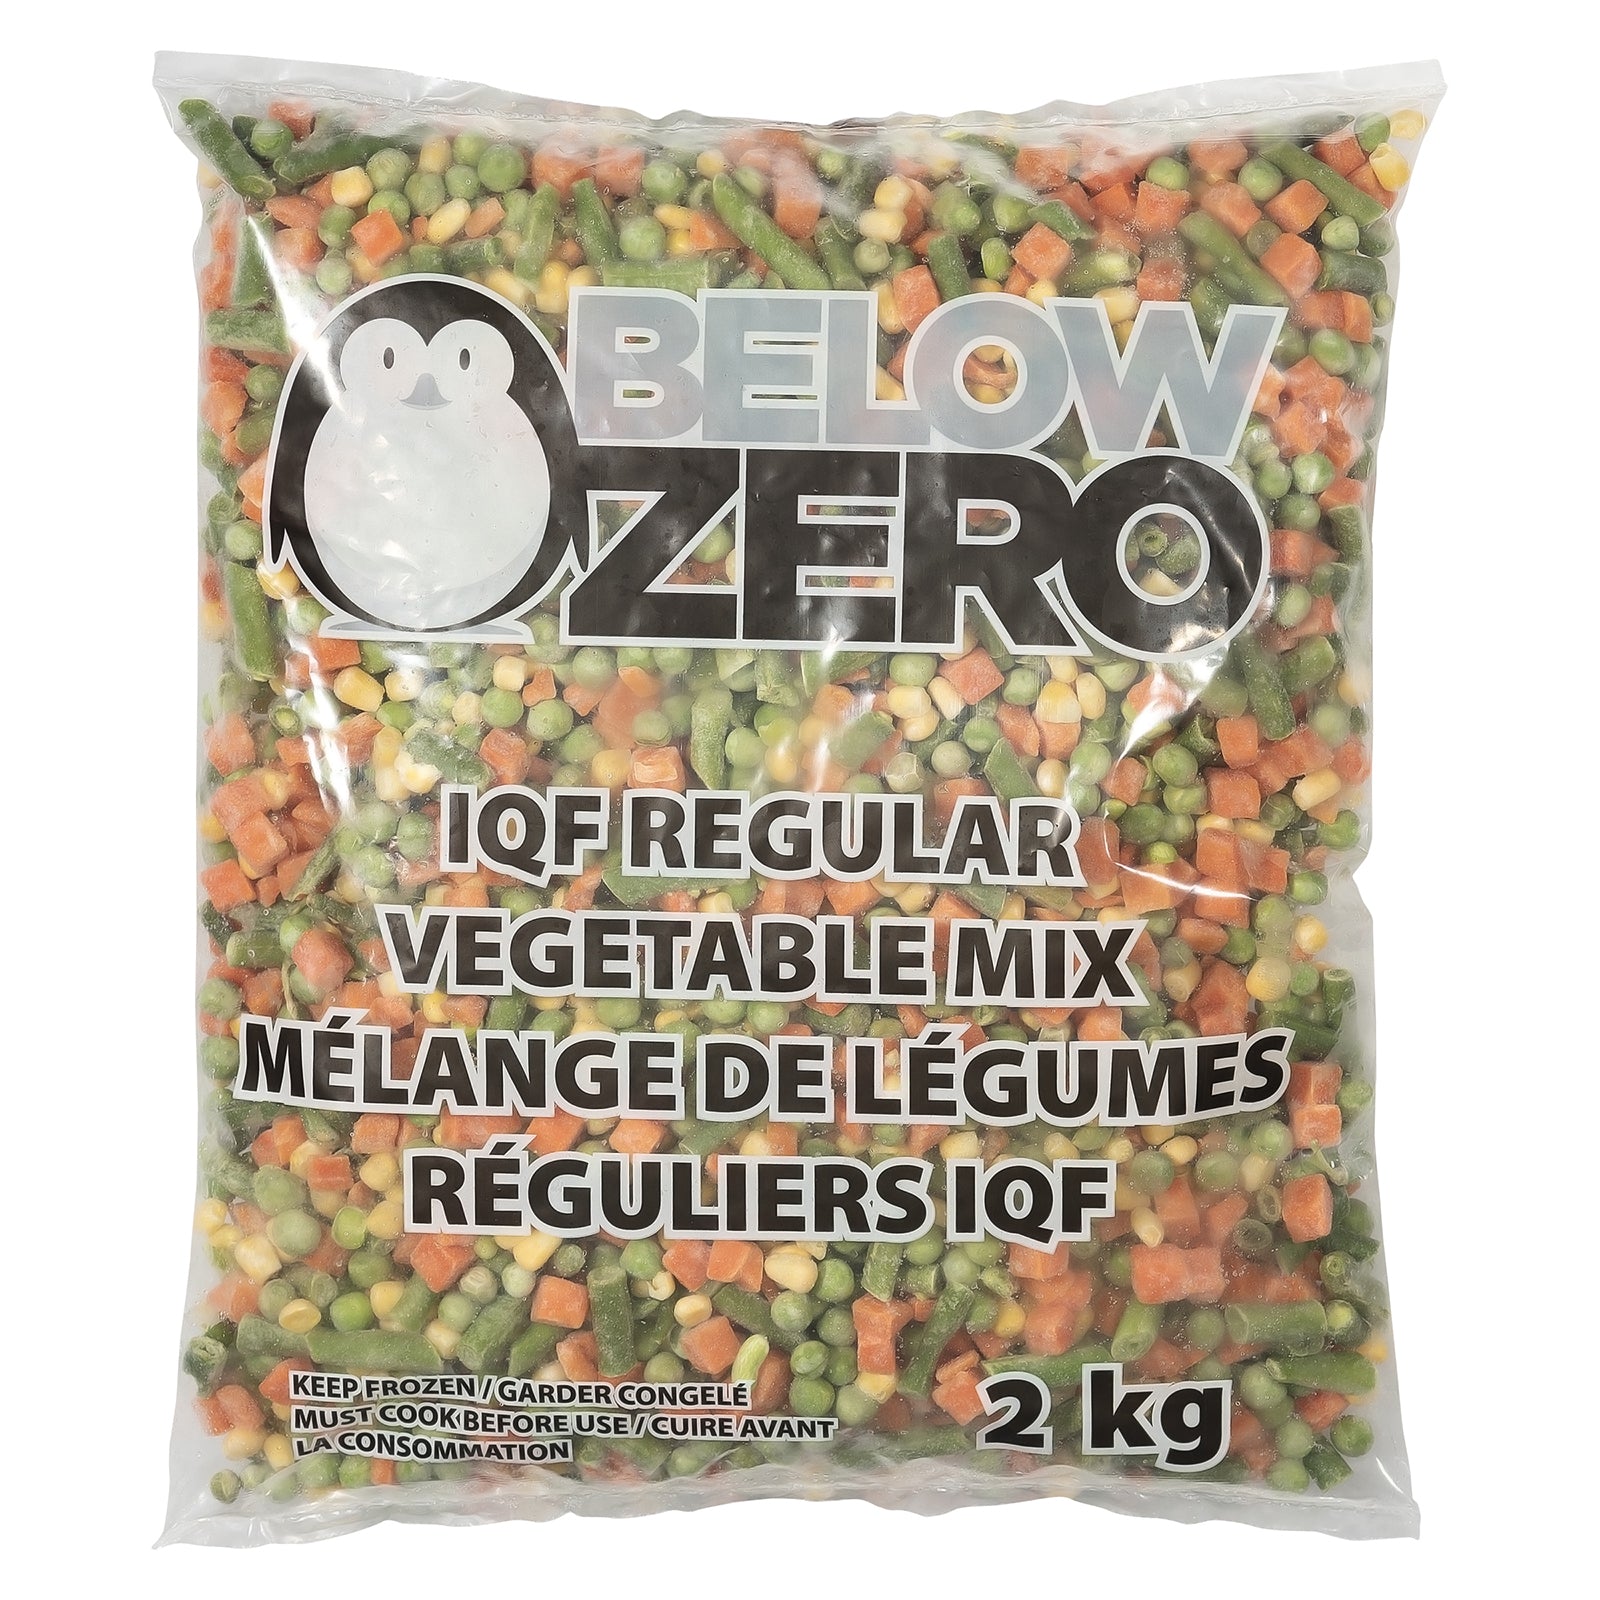 BELOW ZERO Regular mixed vegetables